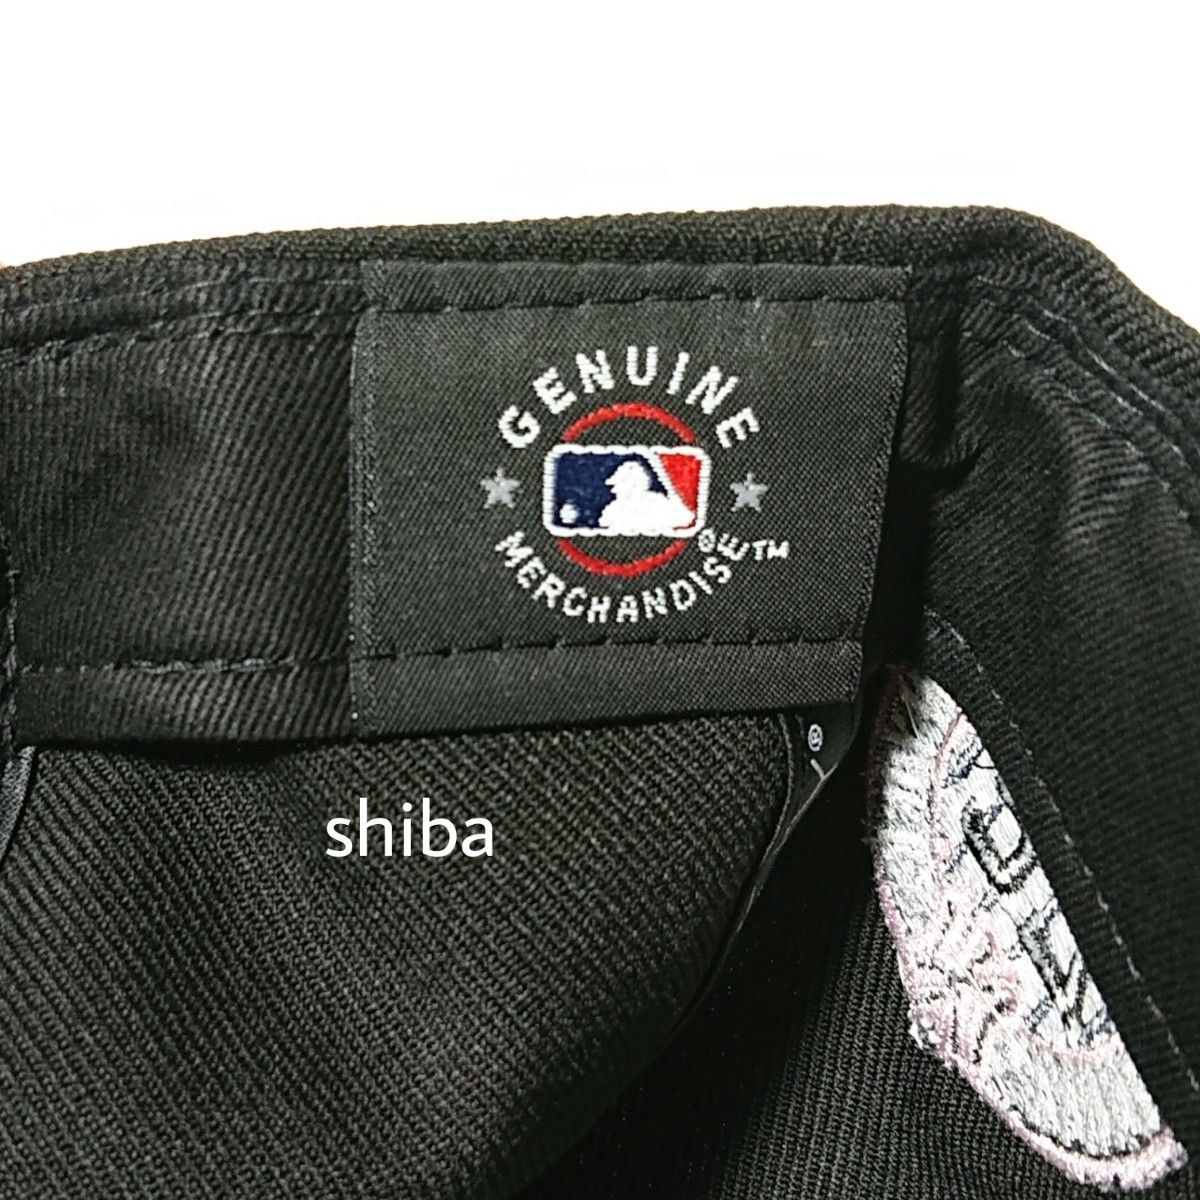 NEW ERA ニューエラ 正規品 アップル キャップ 帽子 9FIFTY 950 NY ヤンキース 黒 ブラック ピンク M/L